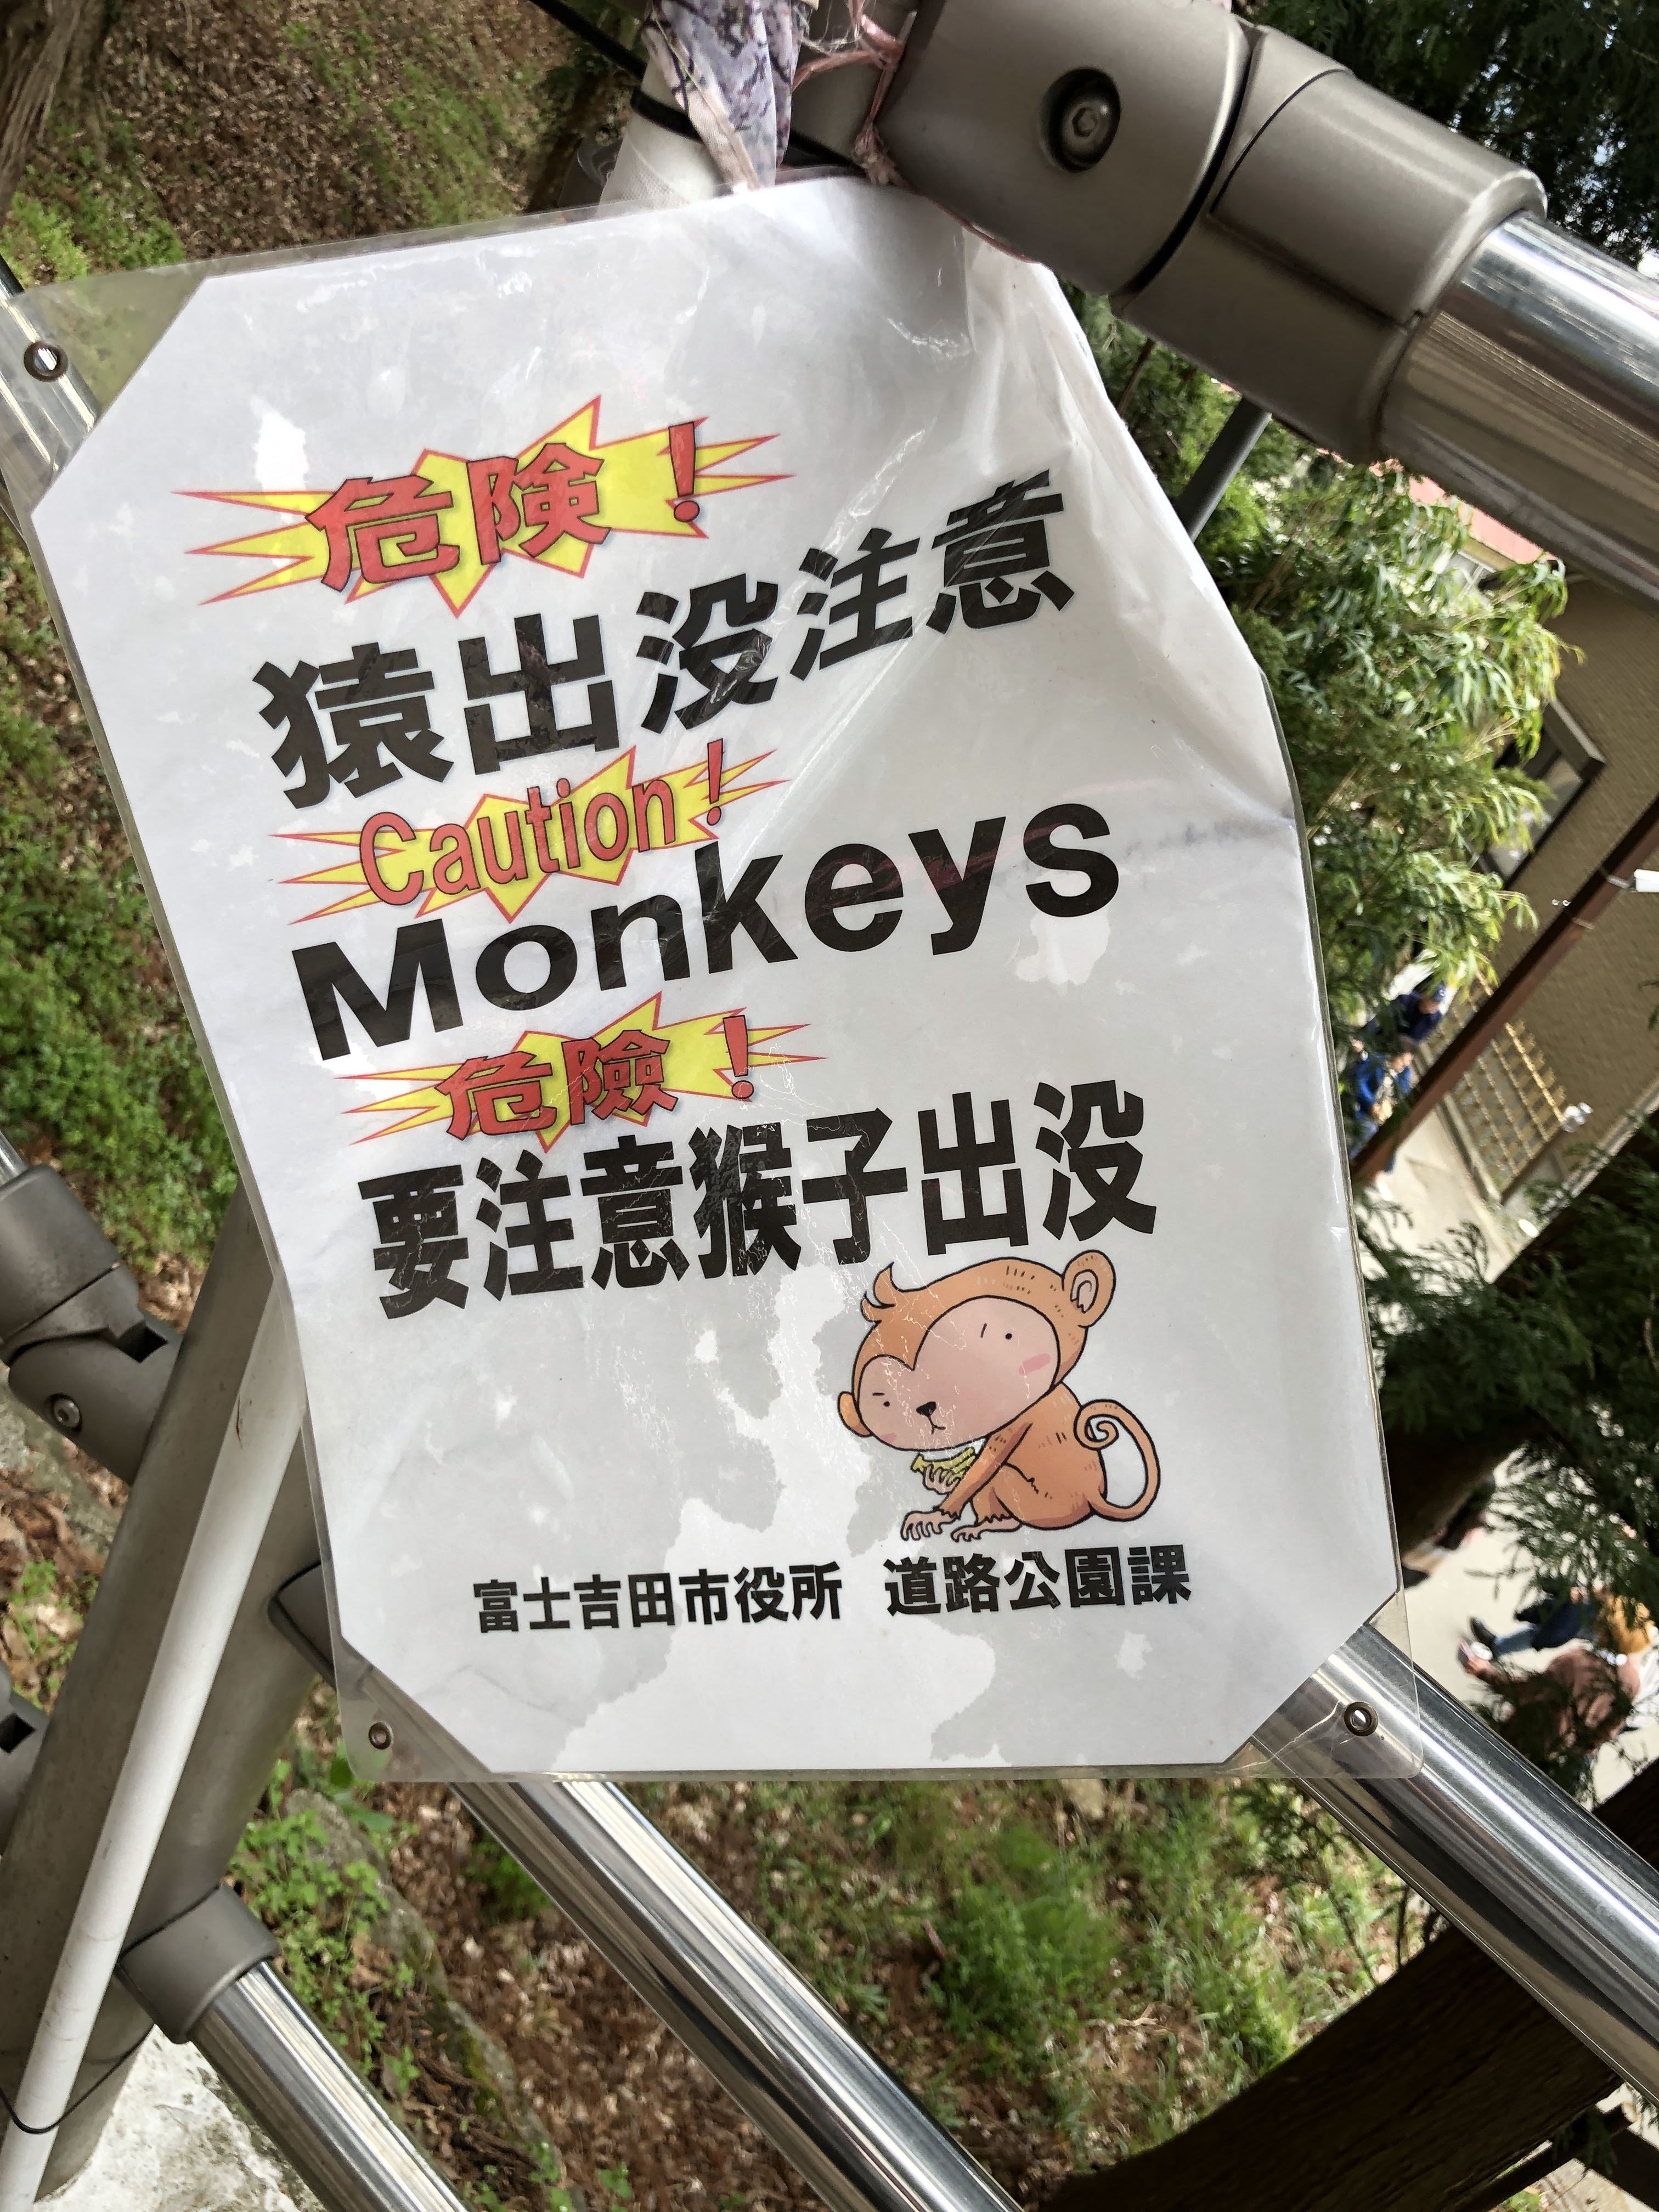 Caution! Monkeys